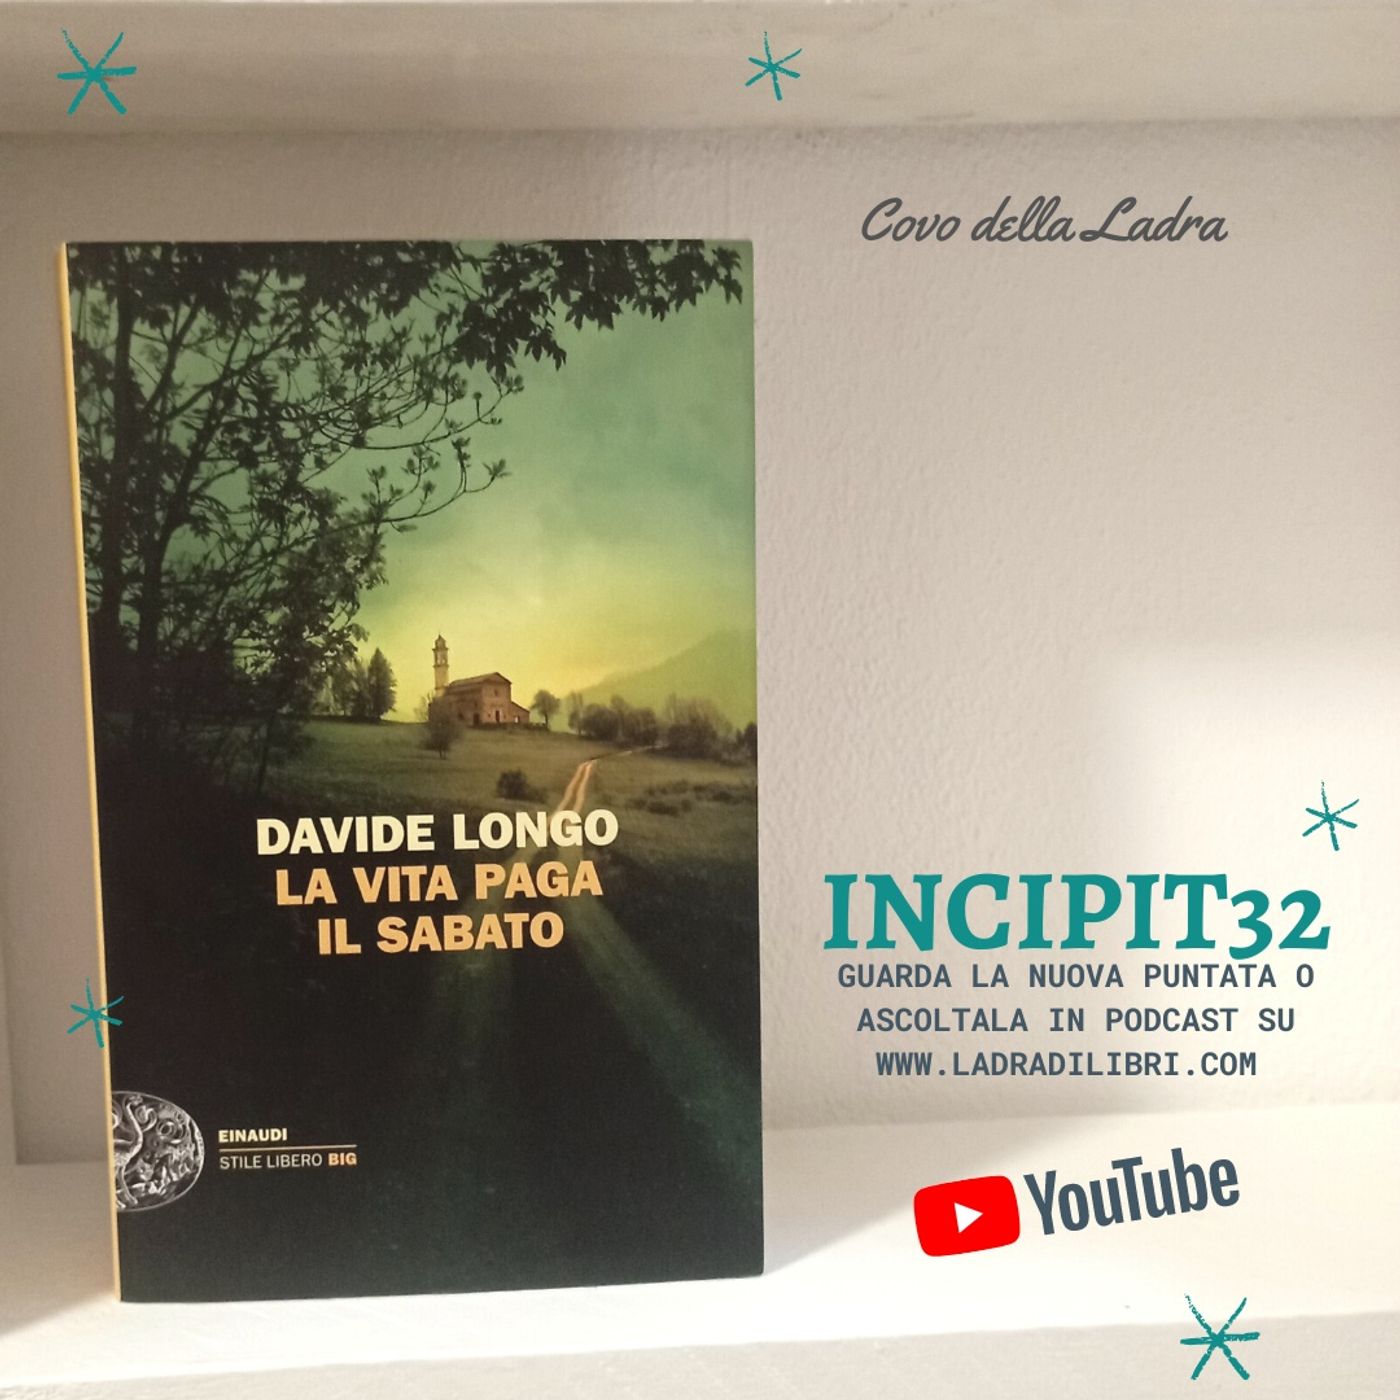 Incipit32 - La vita paga il sabato di Davide Longo